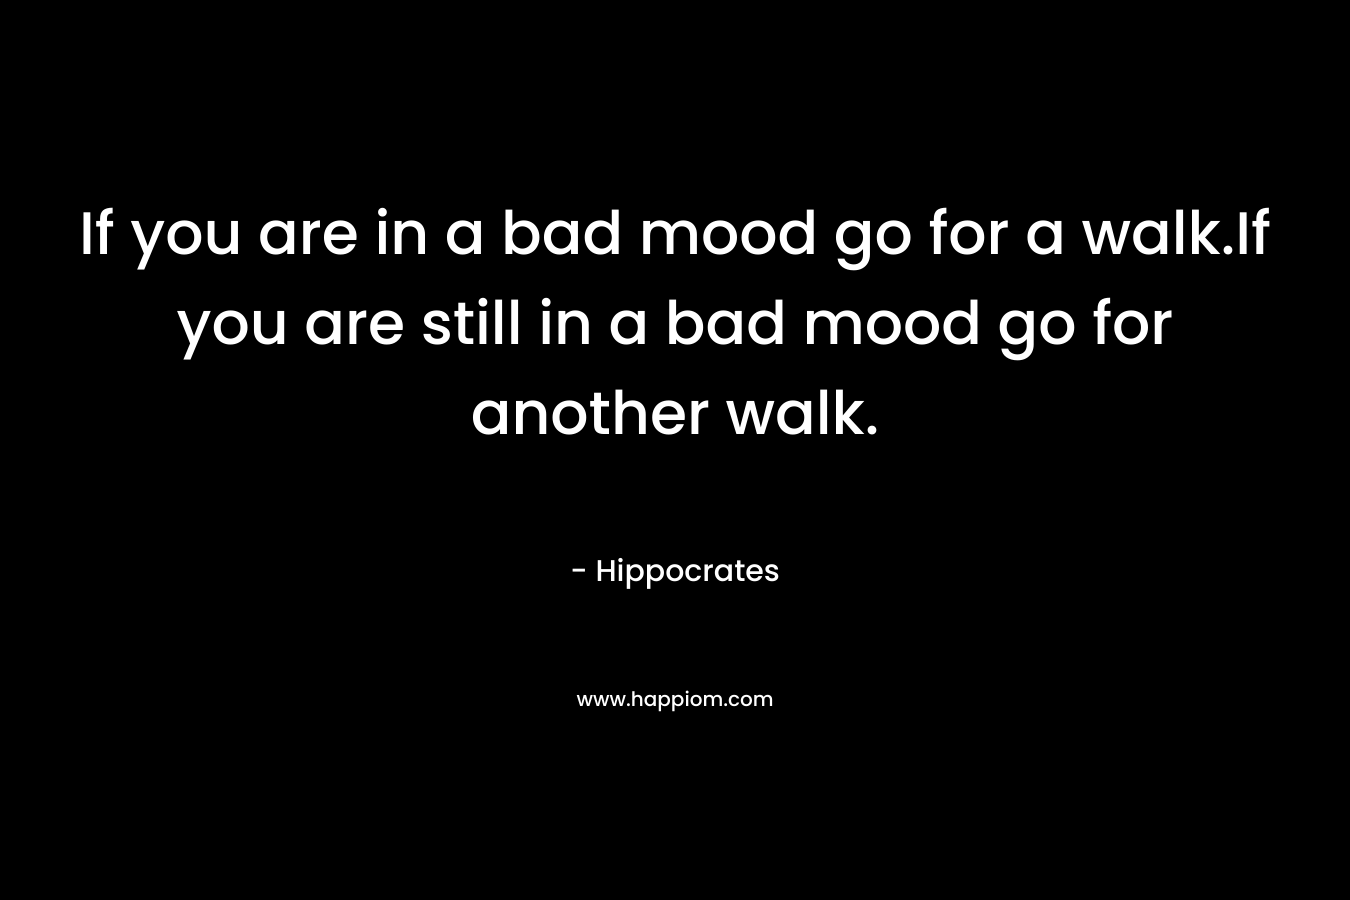 If you are in a bad mood go for a walk.If you are still in a bad mood go for another walk. – Hippocrates